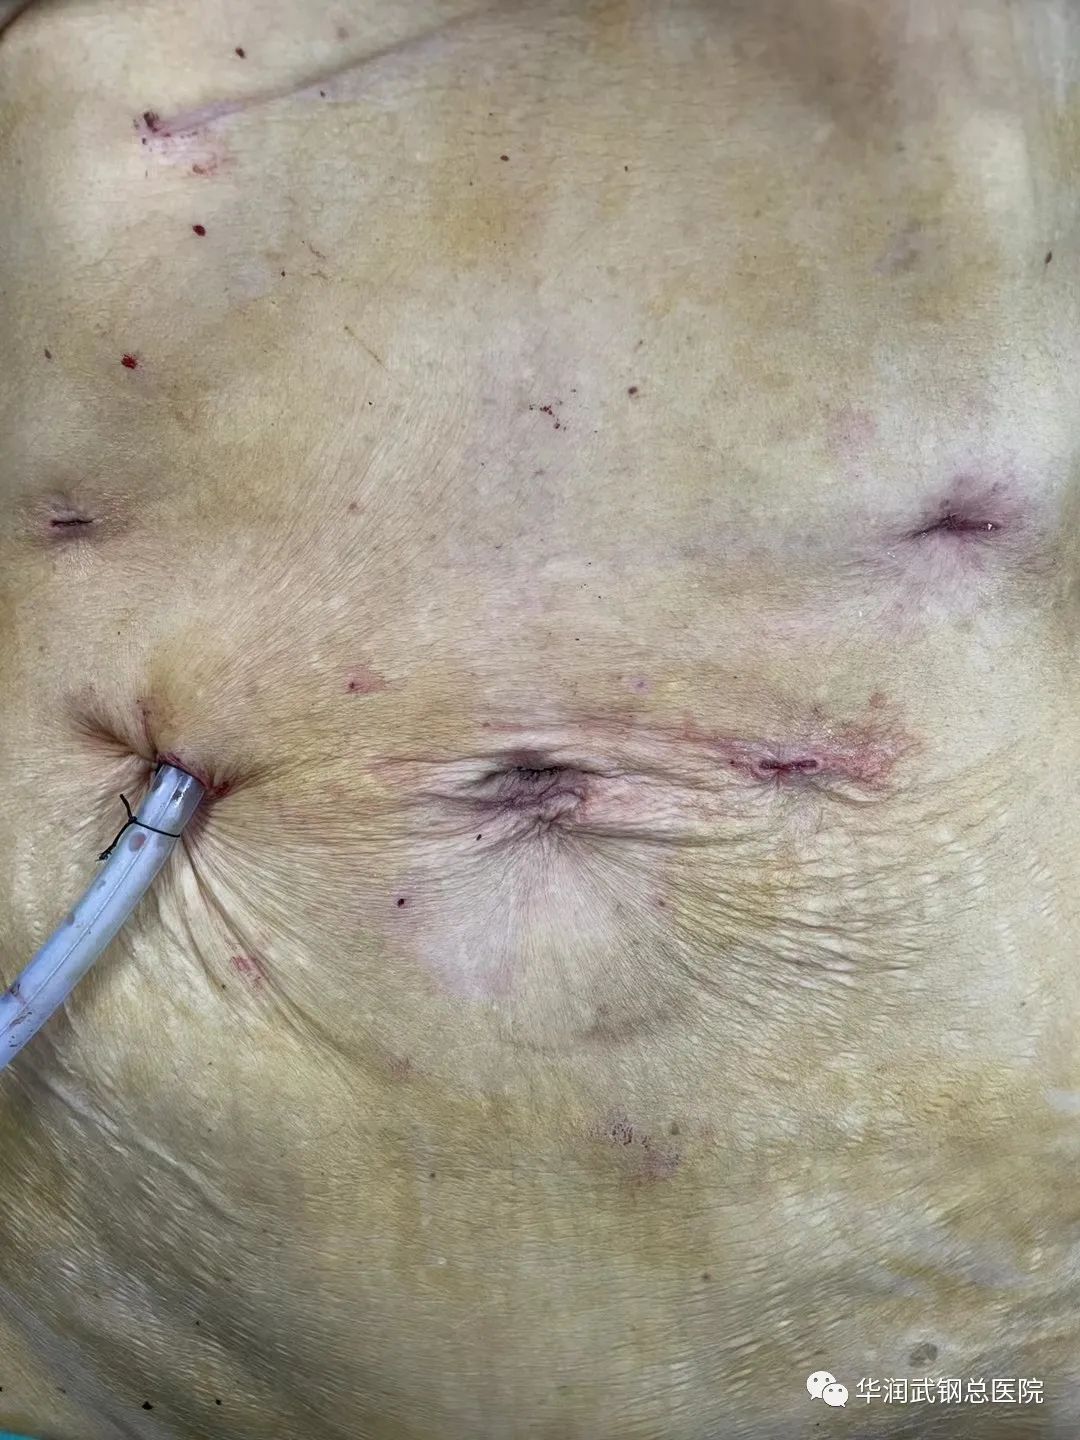 华润总医院胃肠外科完成了首例 3D 腹腔镜胃癌 NOSES 手术